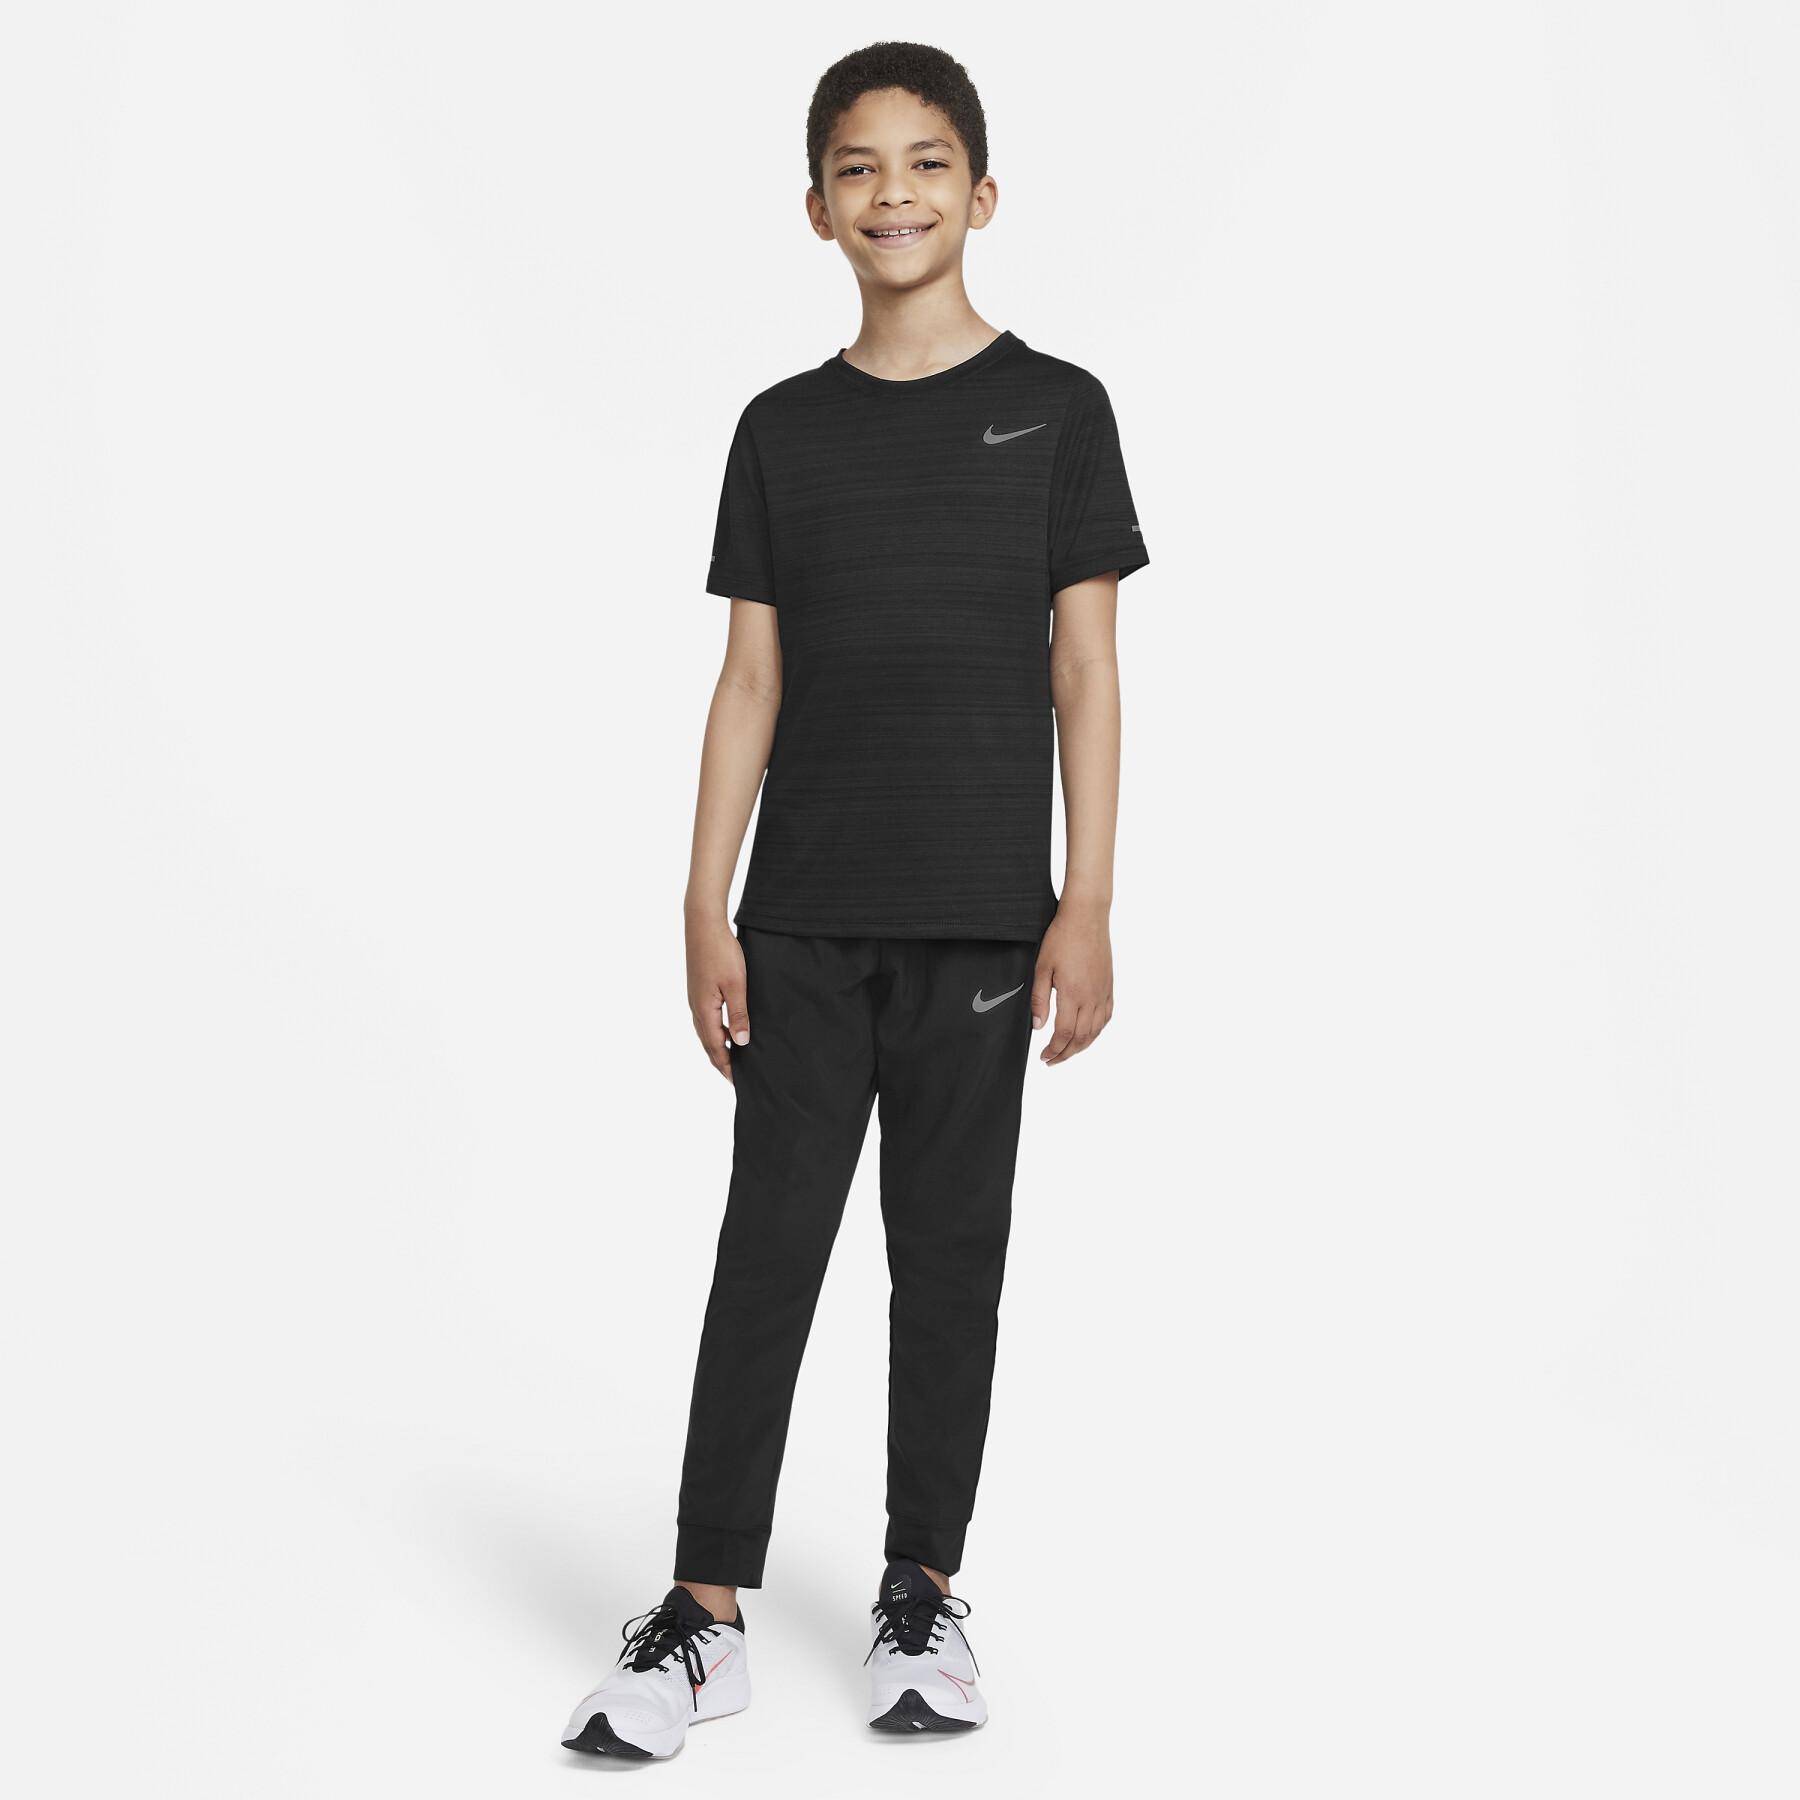 Children's jogging suit Nike Woven